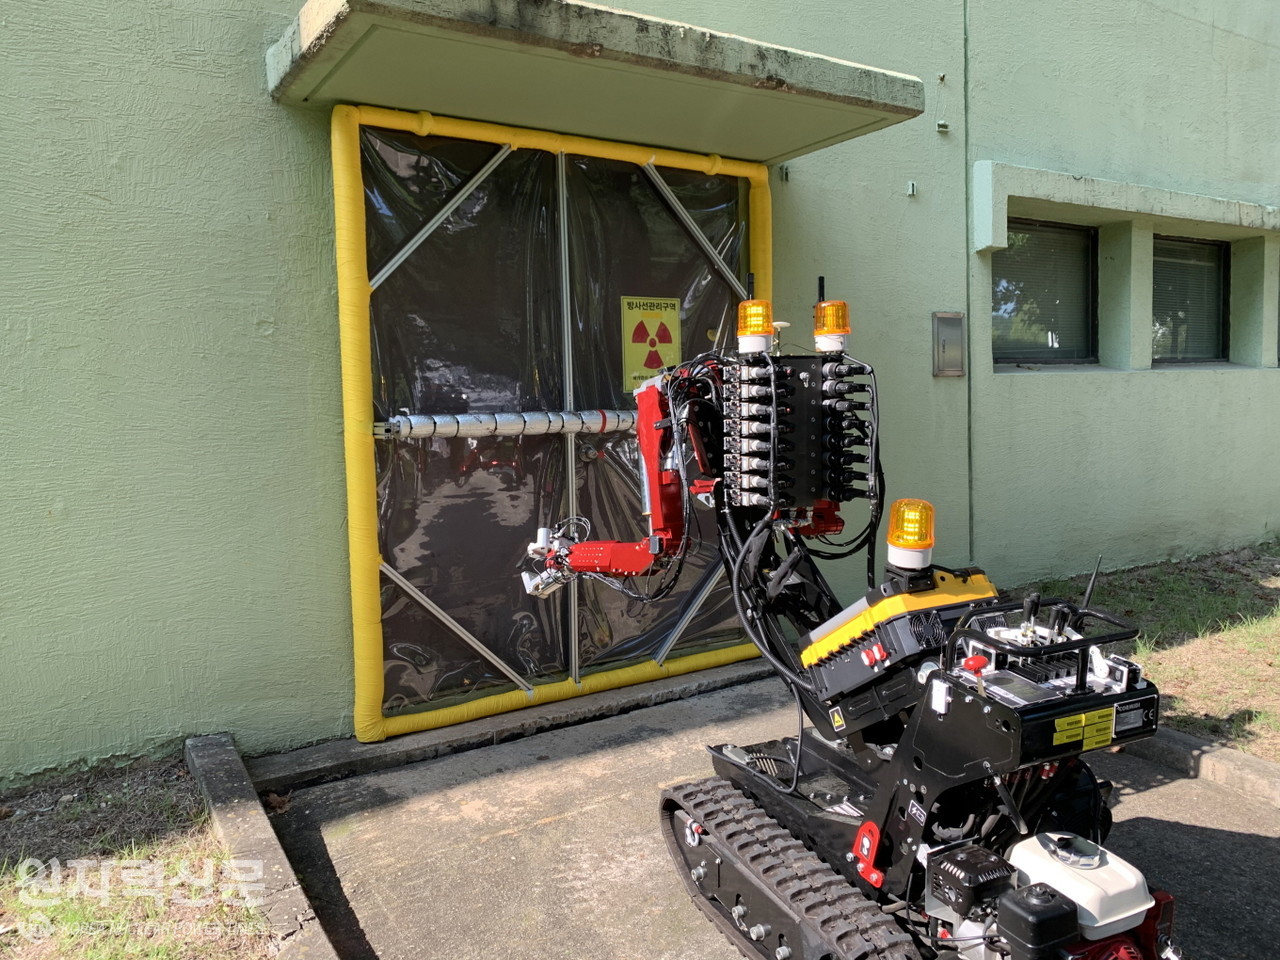 원자력연구원이 개발한 암스토롱 로봇이 차폐막을 설치하고 있는 장면.